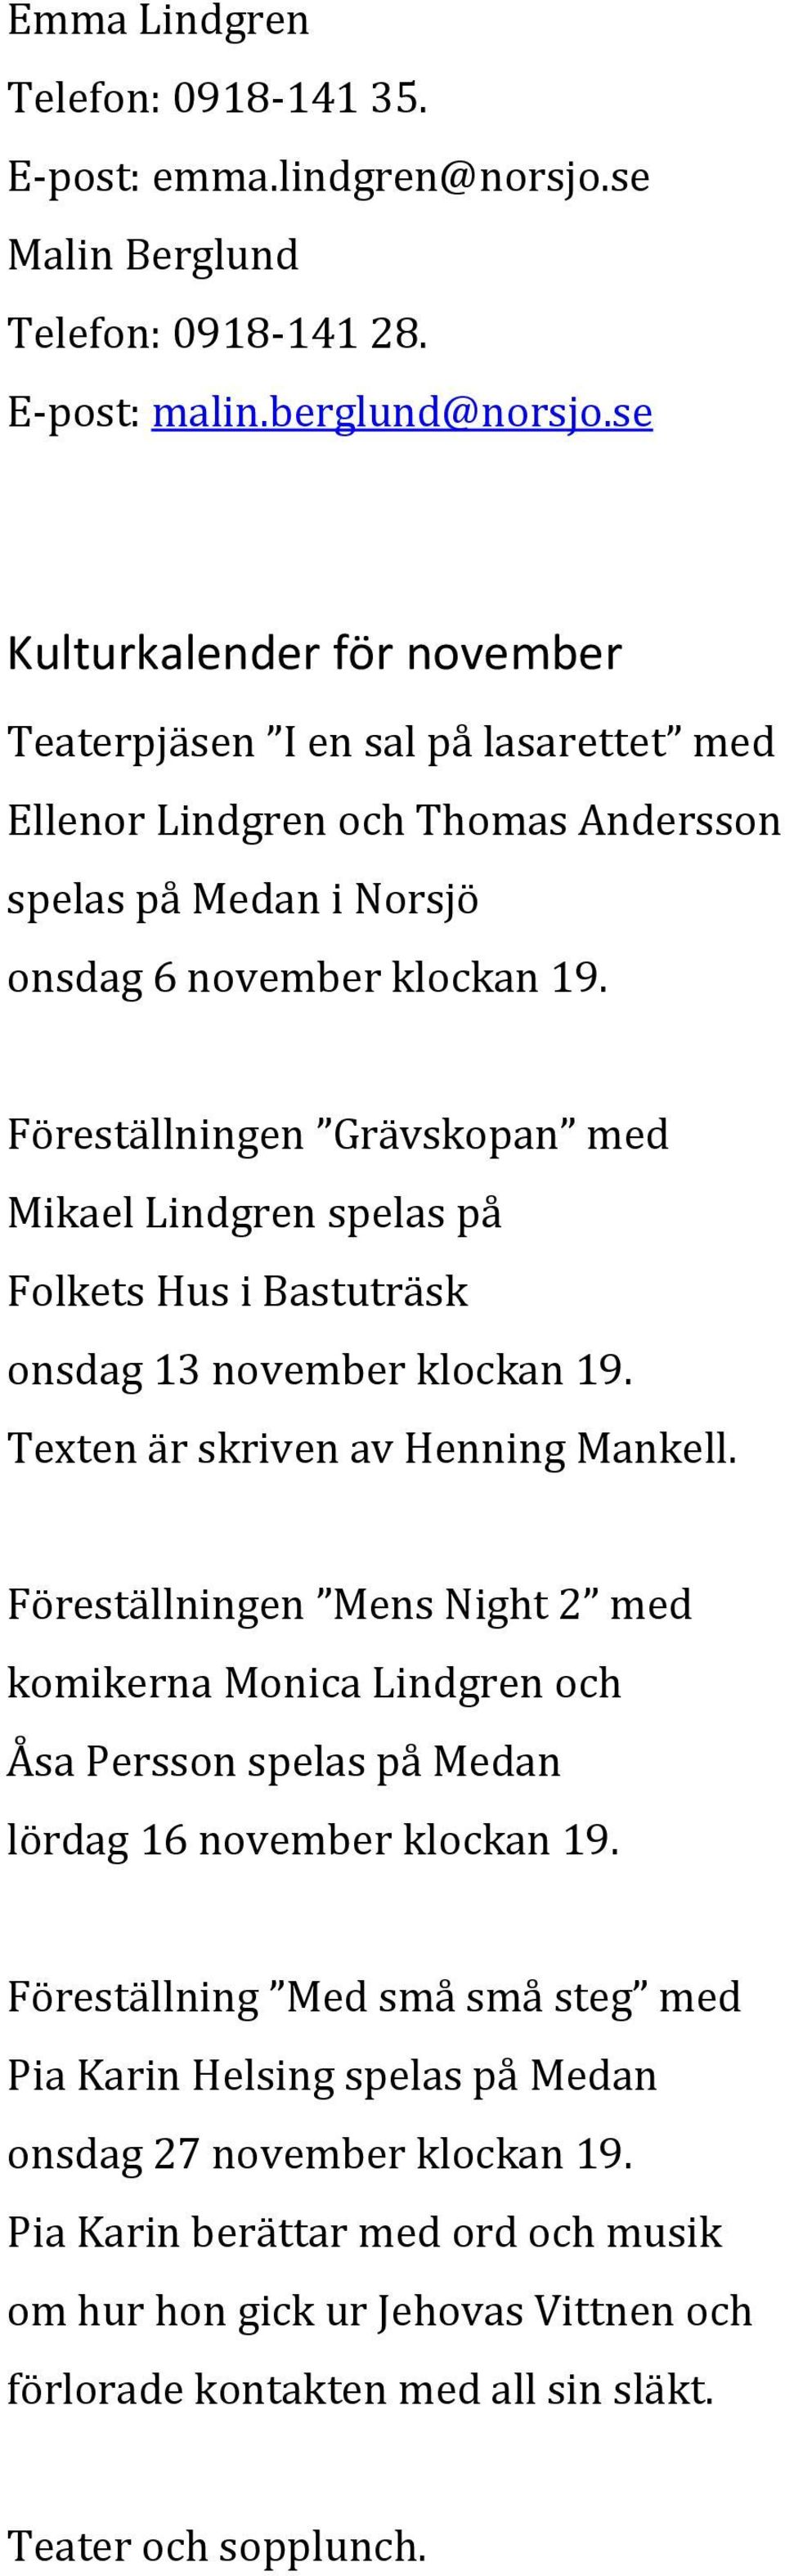 Föreställningen Grävskopan med Mikael Lindgren spelas på Folkets Hus i Bastuträsk onsdag 13 november klockan 19. Texten är skriven av Henning Mankell.